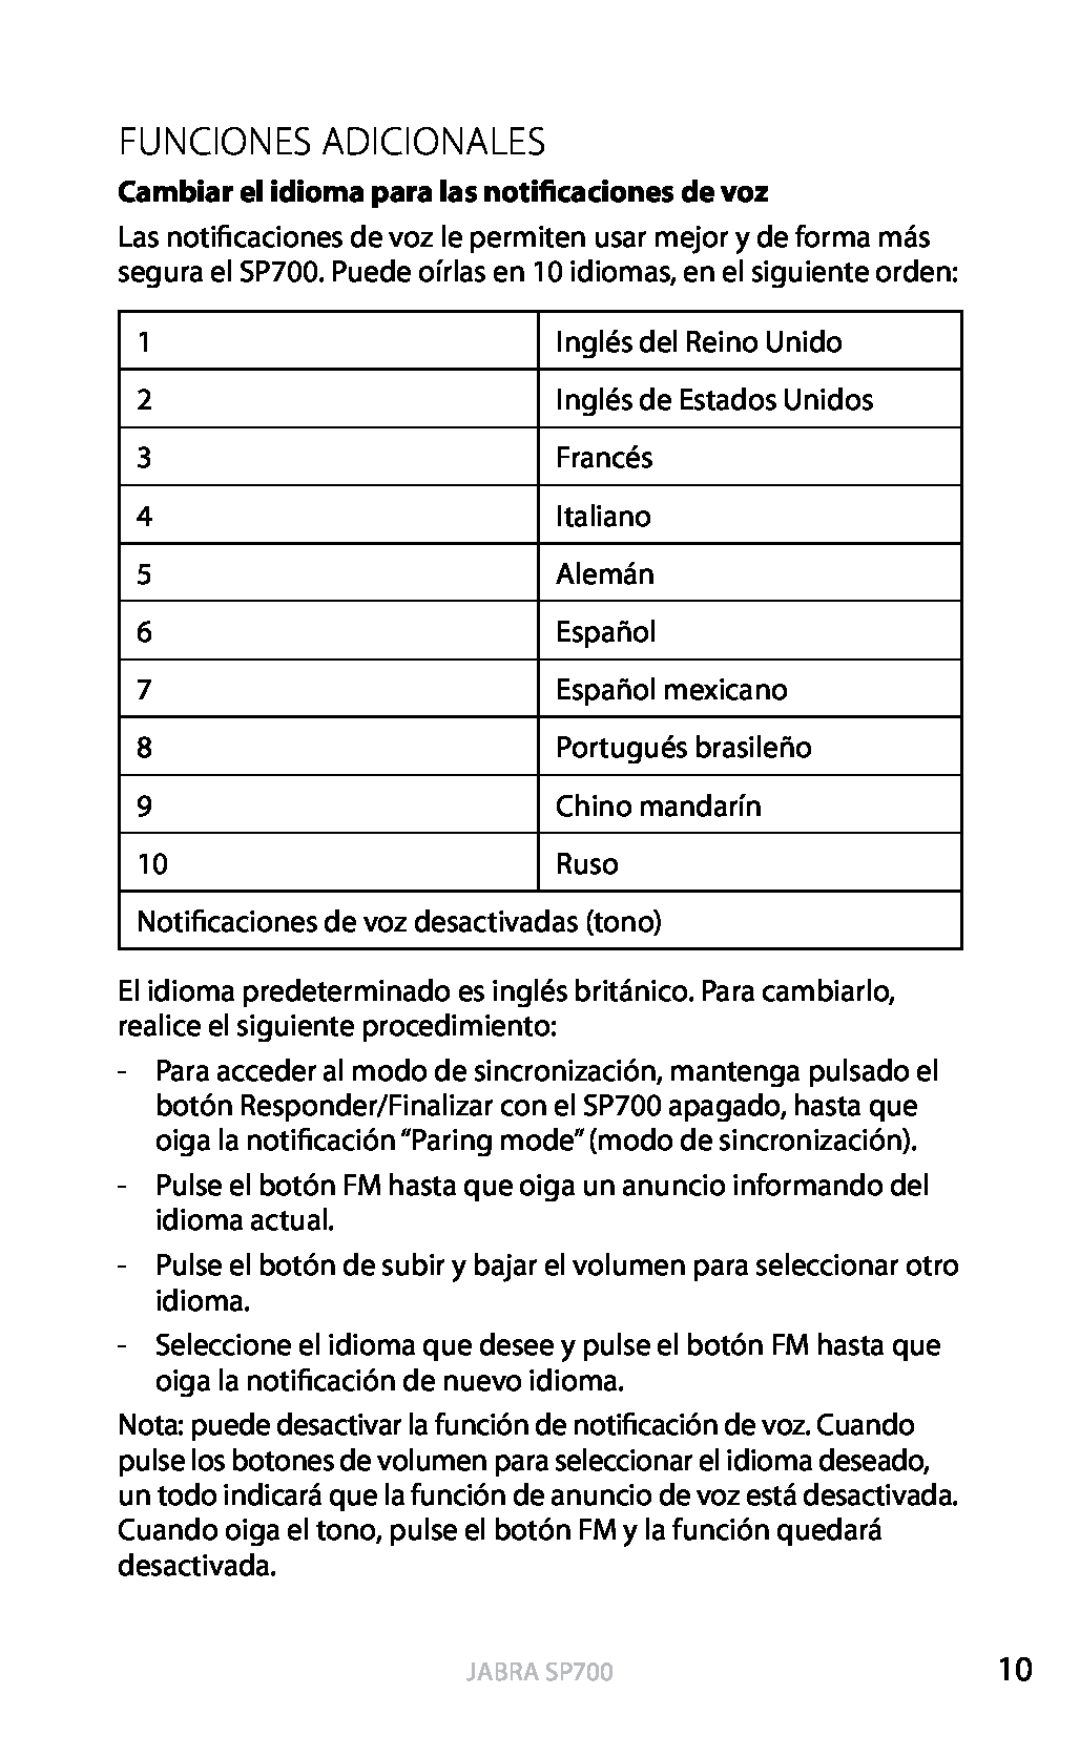 Jabra SP700 user manual Funciones Adicionales, Cambiar el idioma para las notificaciones de voz, Español 